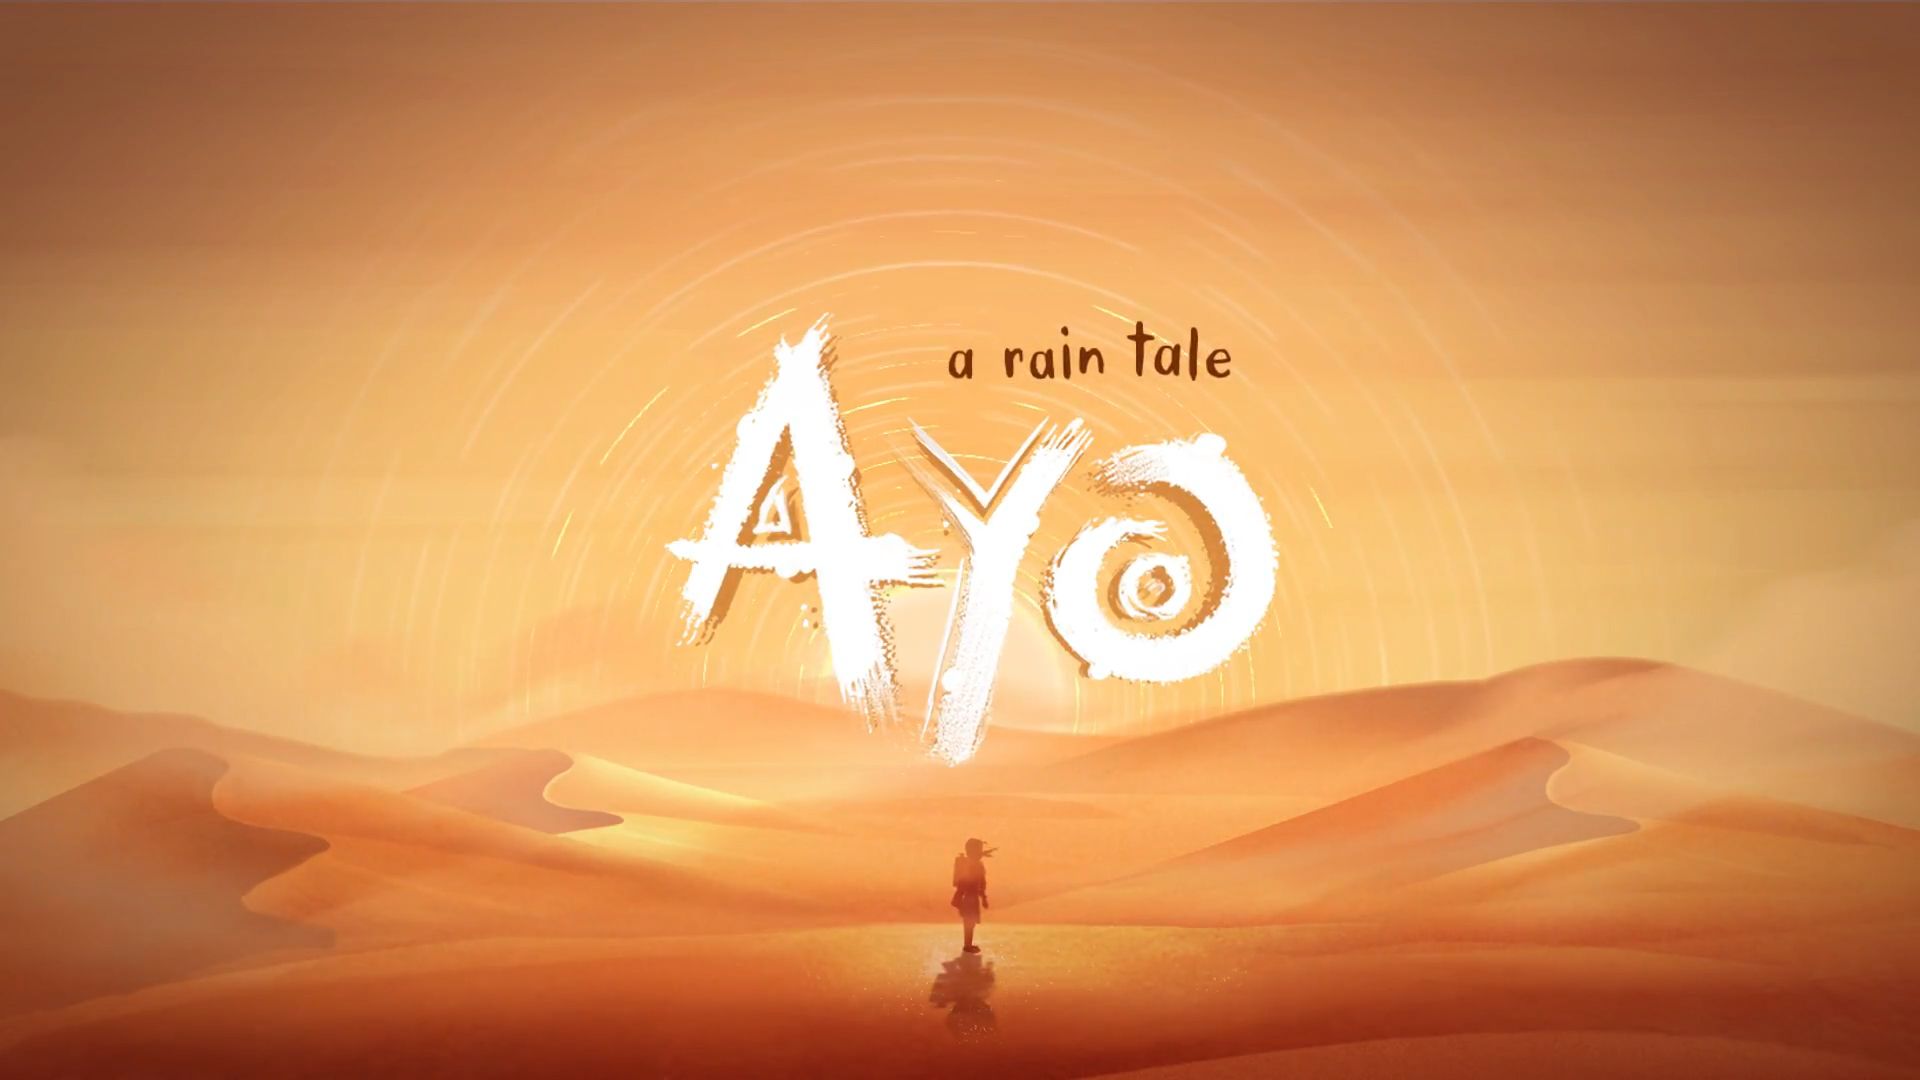 Ayo: A Rain Tale de Inkline Ltd